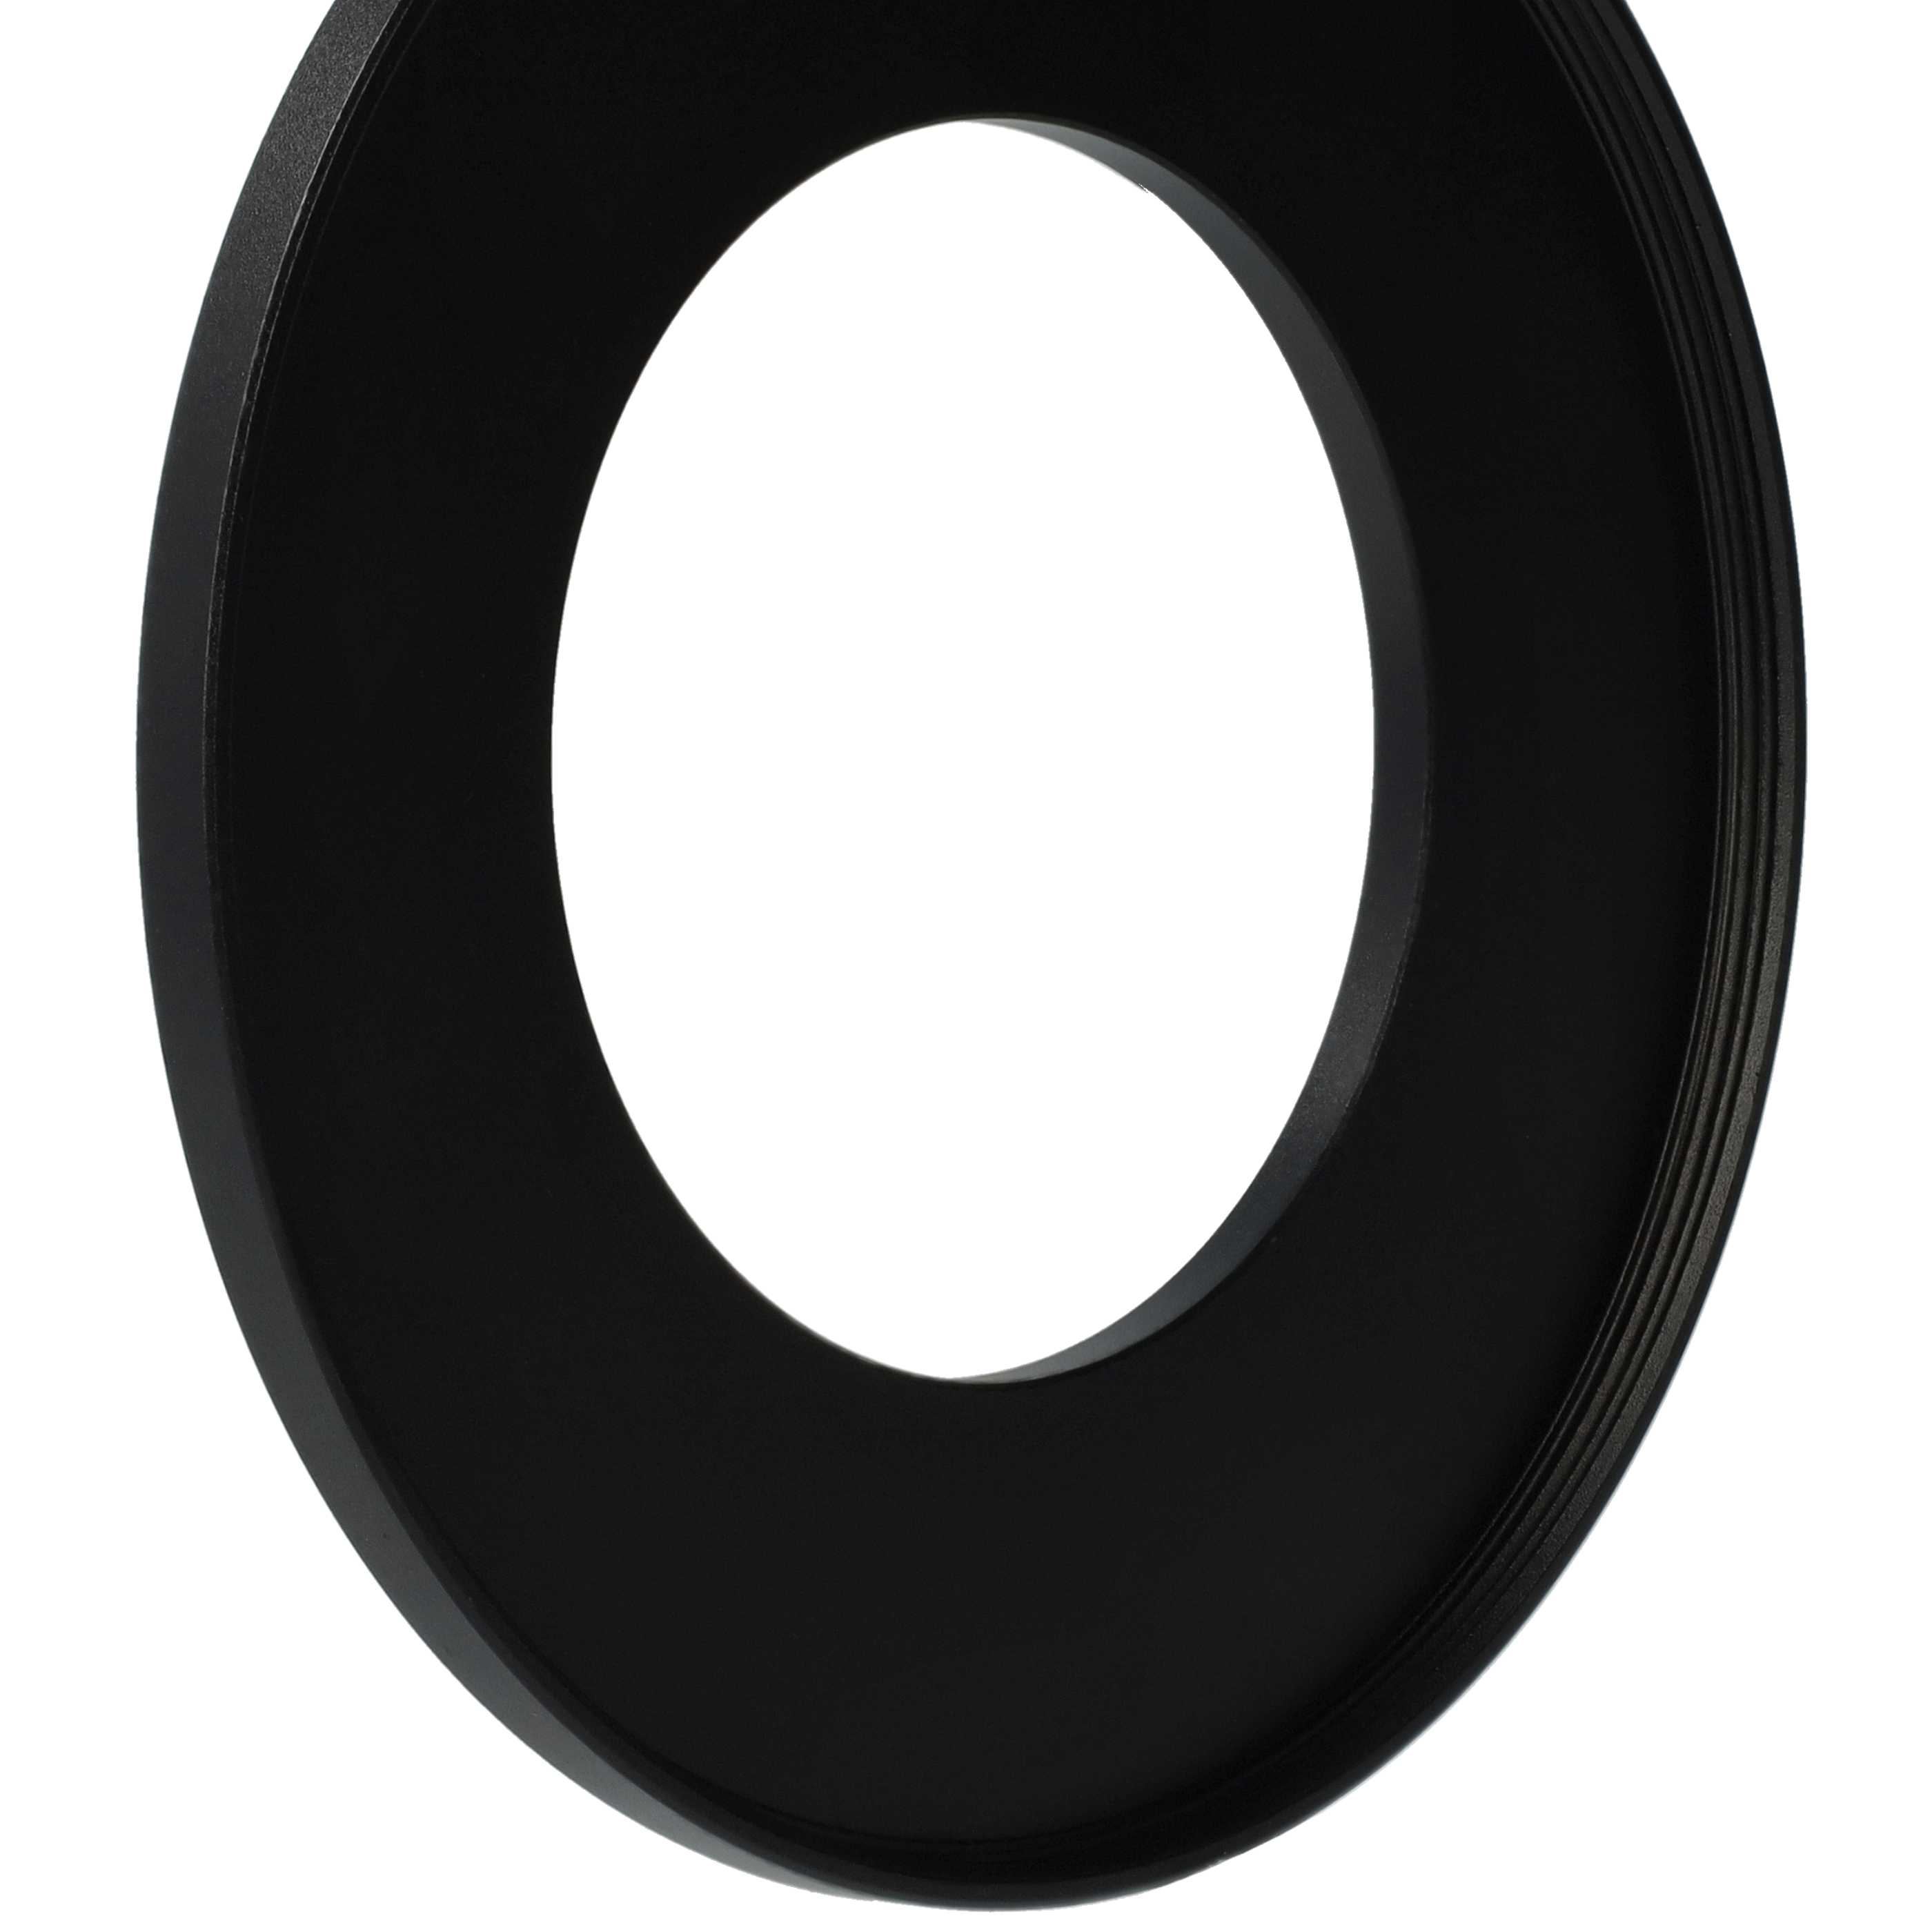 Step-Up-Ring Adapter 49 mm auf 82 mm passend für diverse Kamera-Objektive - Filteradapter